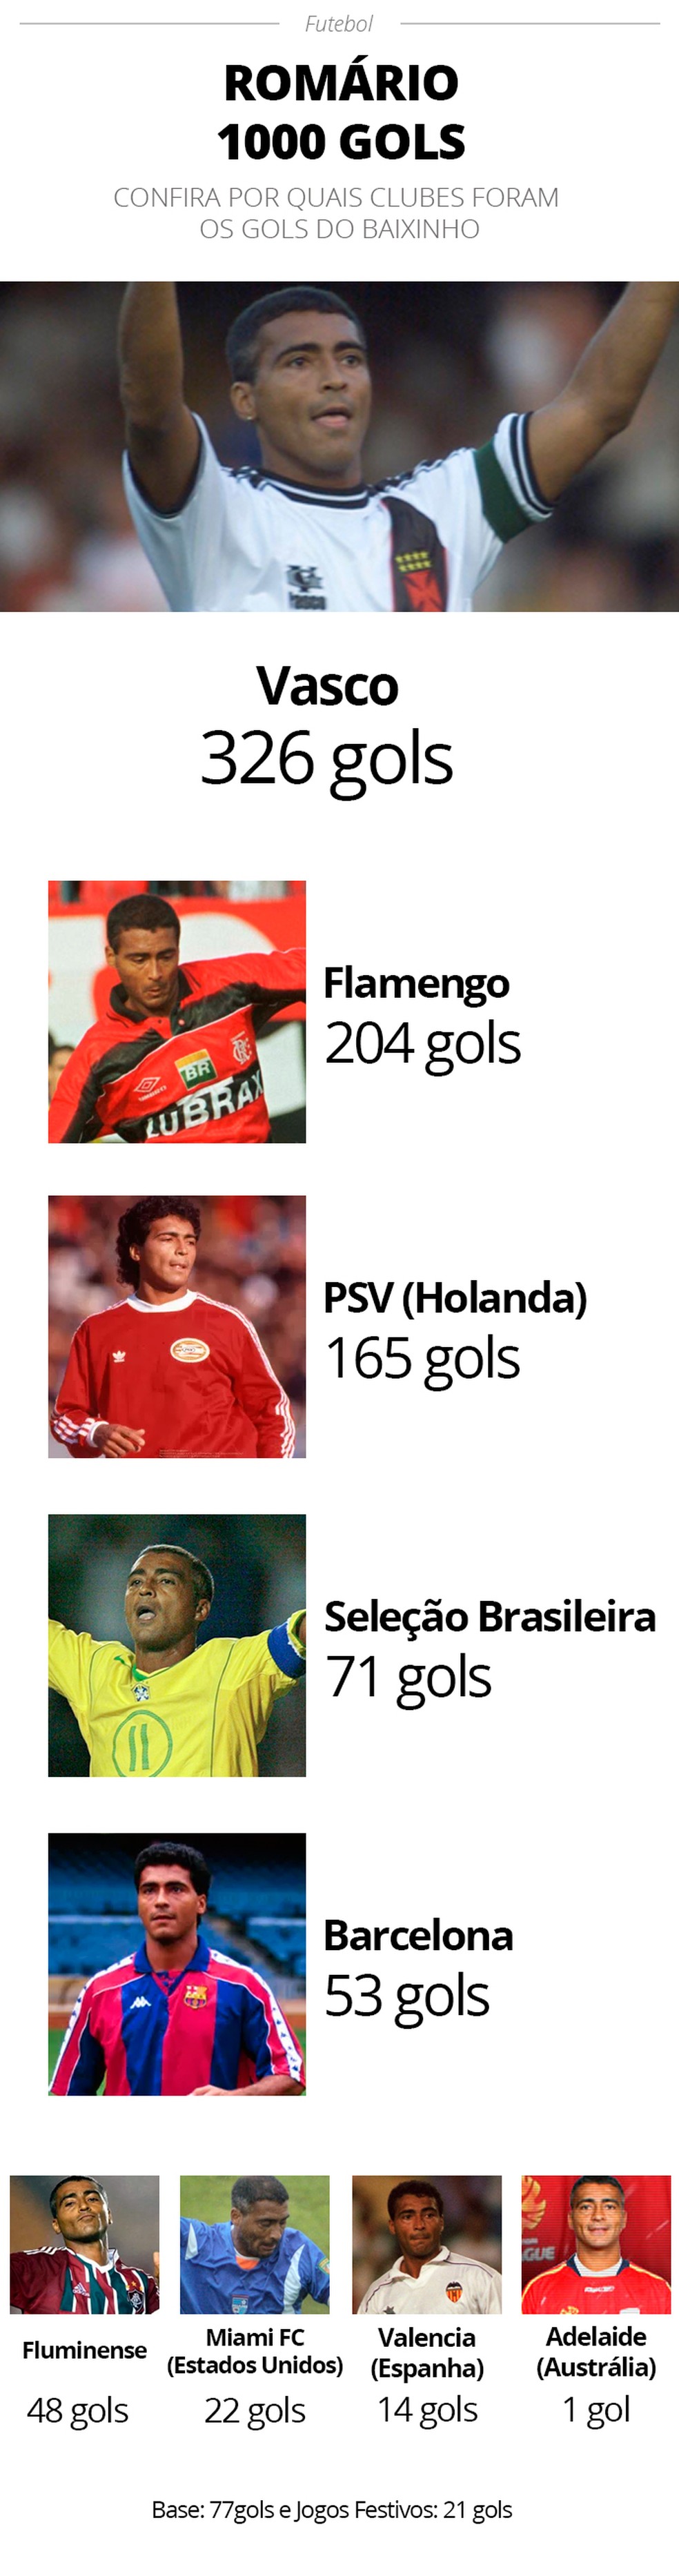 Confira os 1000 gols de Romário divididos pelos times que defendeu na carreira — Foto: Editoria de Arte/GloboEsporte.com